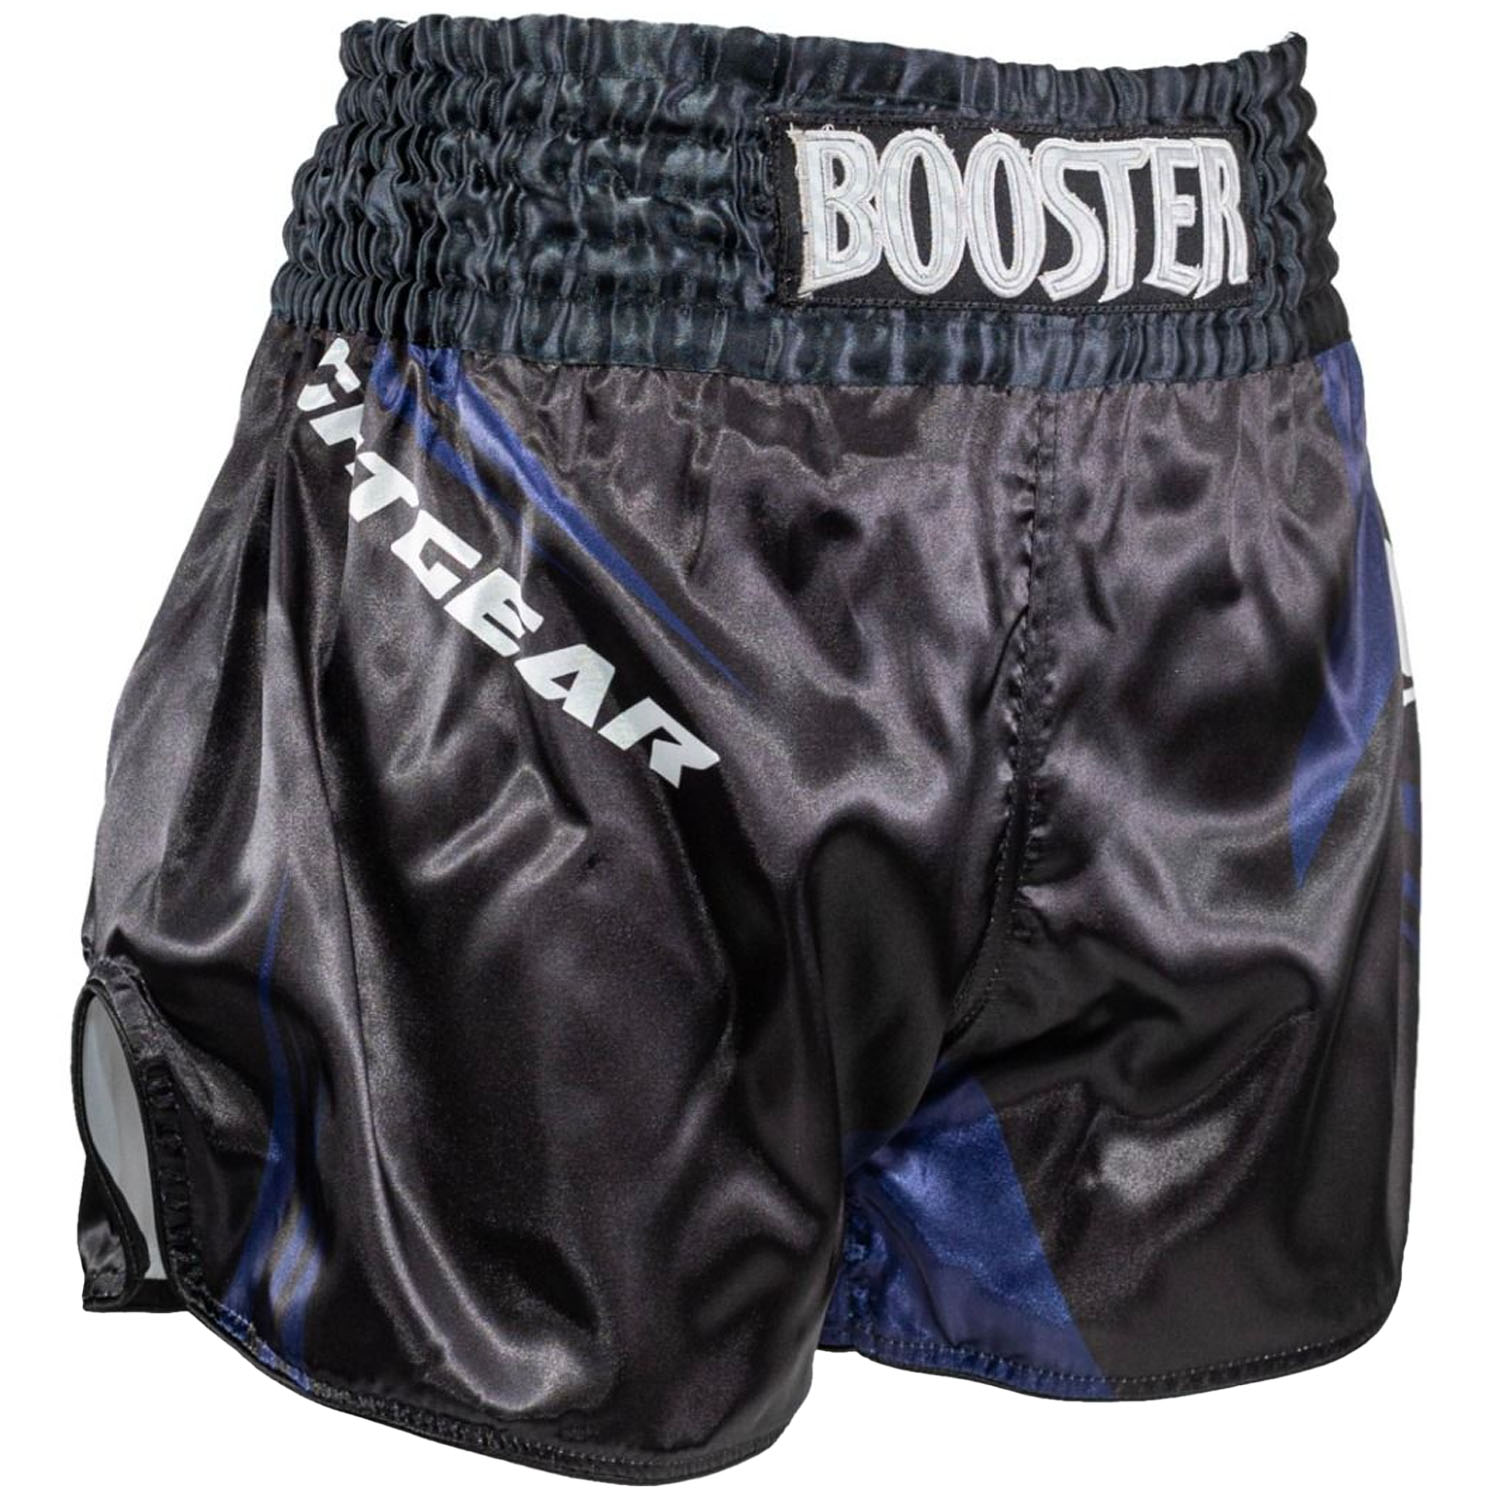 Booster Muay Thai Shorts, AD Xplosion 1, schwarz-blau, XL